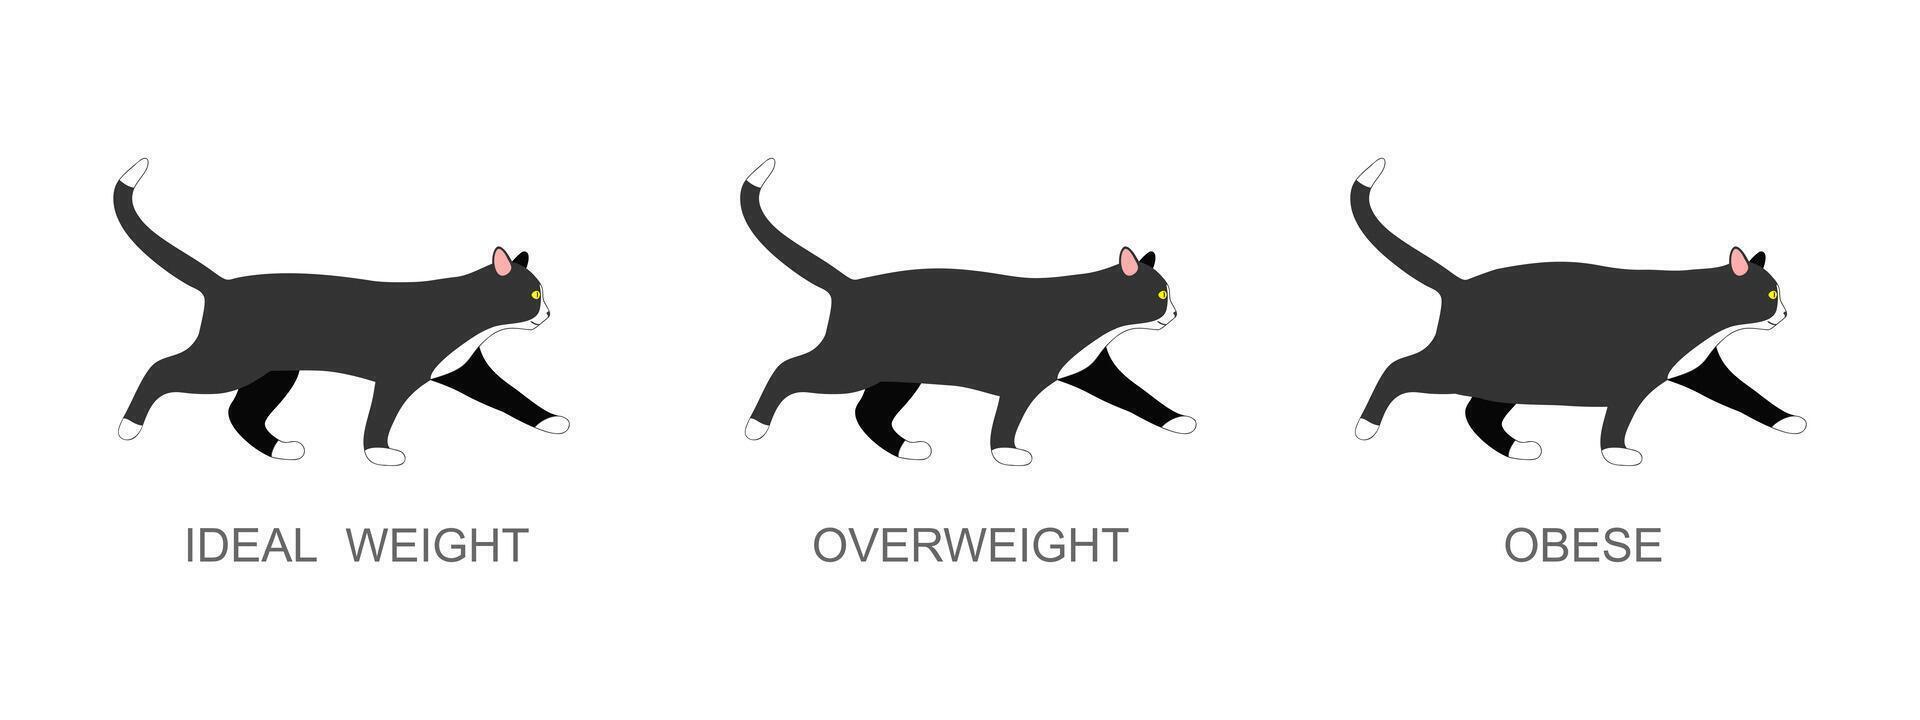 katt med idealisk vikt, övervikt och fet. kattunge med vanligt och fett kropp skick. inhemsk djur fetma bearbeta infographic vektor